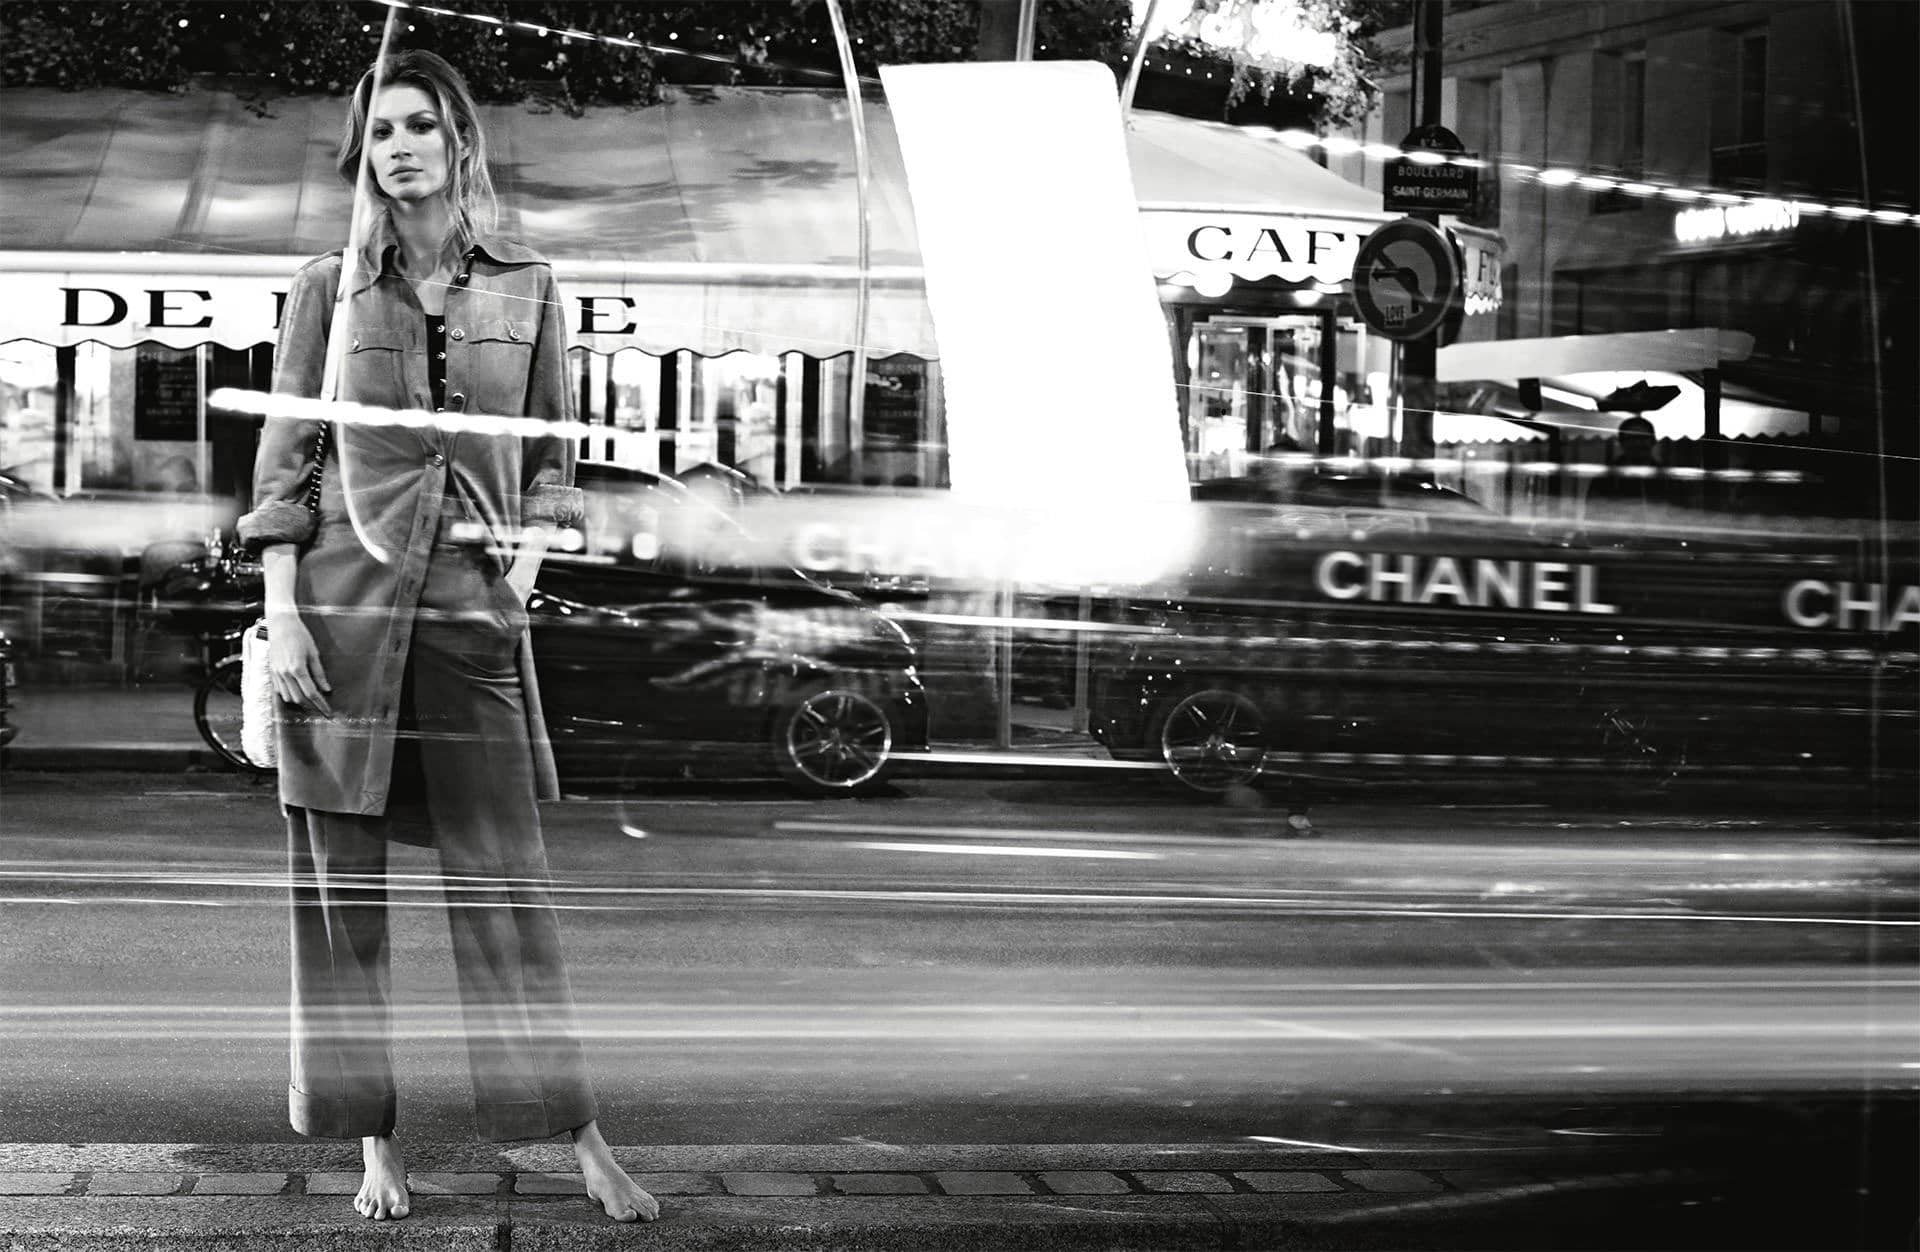 Chanel S/S 2015 - Gisele Bündchen - Karl Lagerfeld